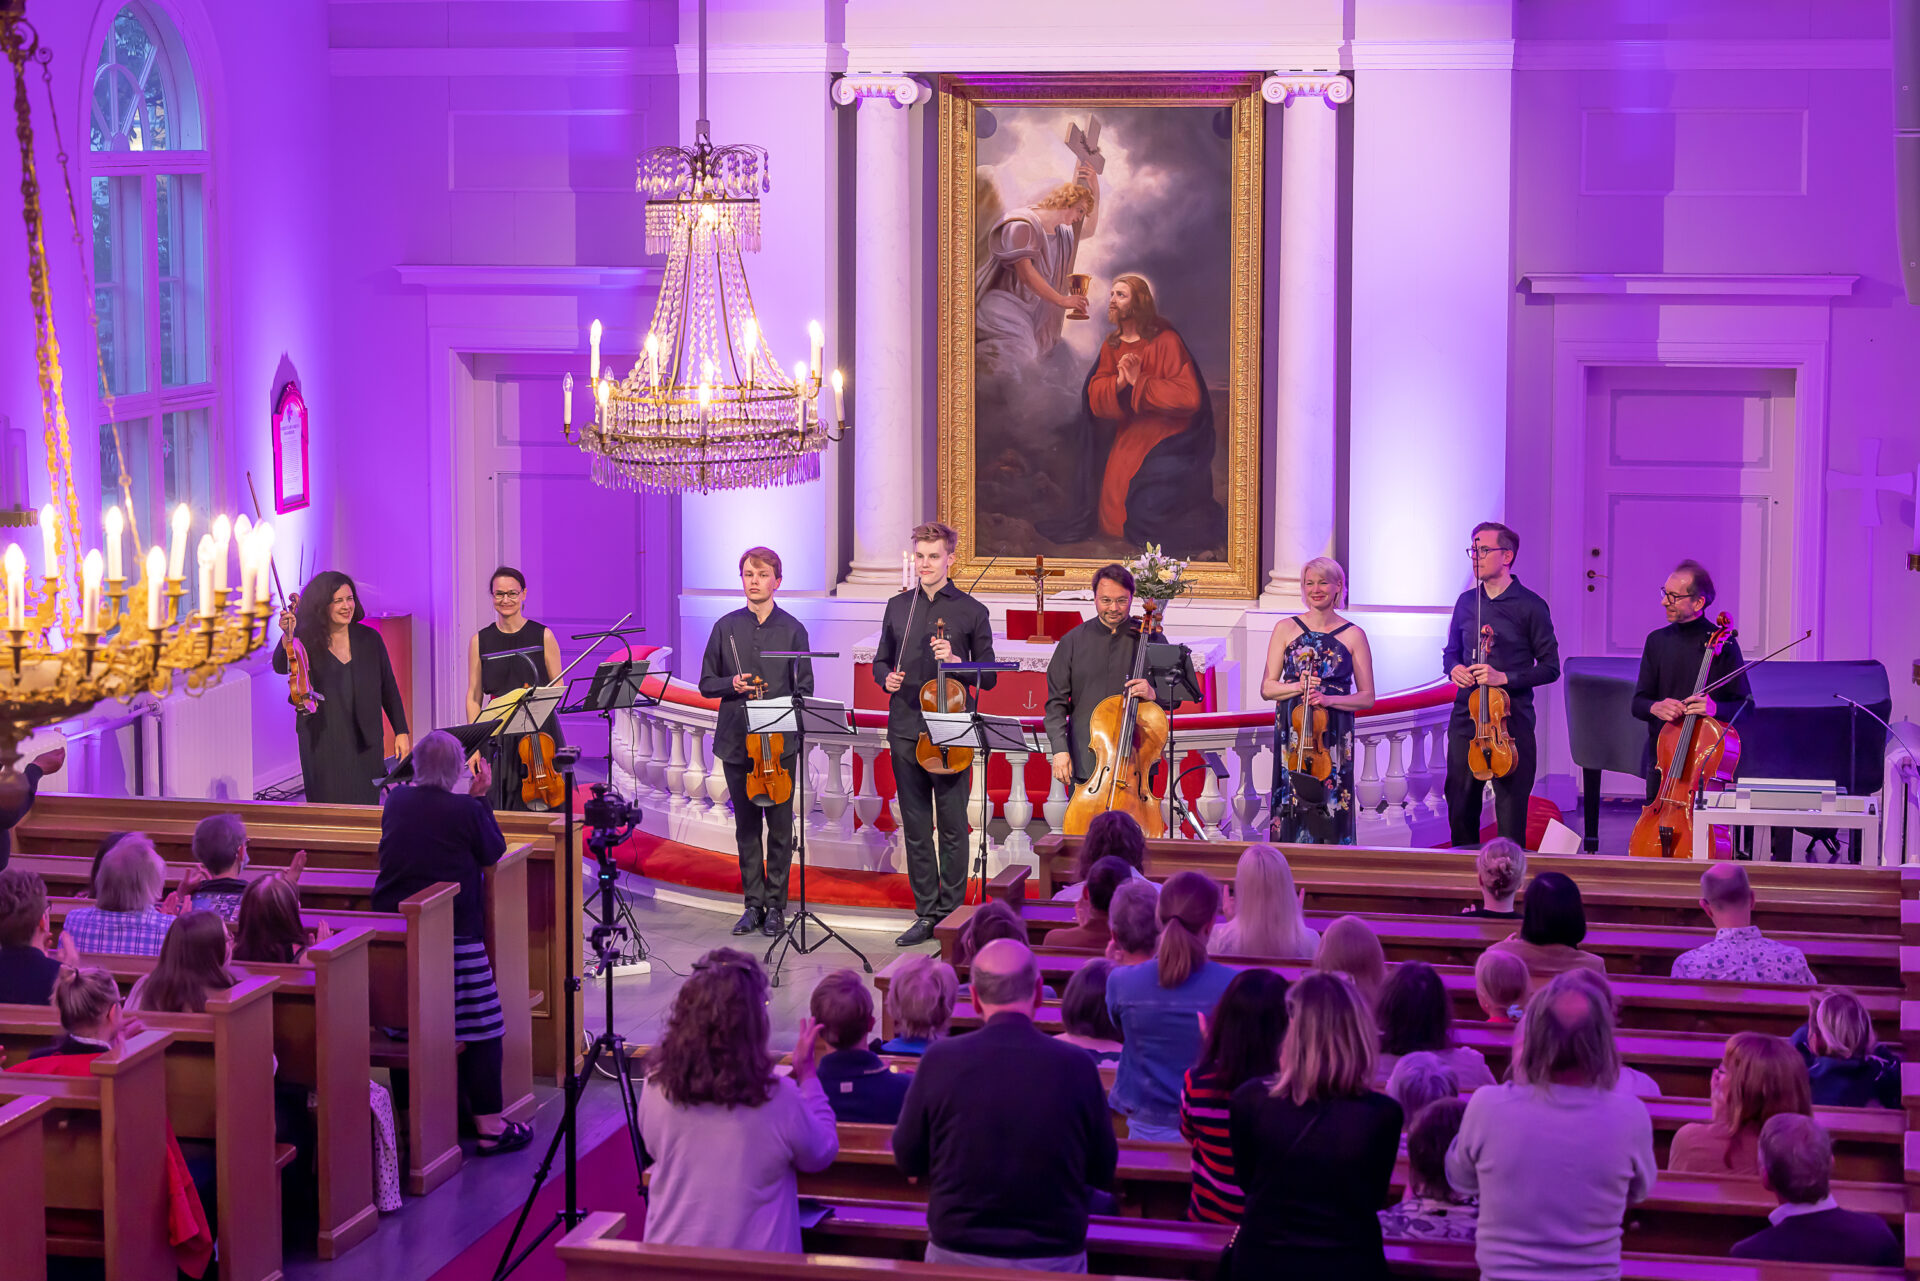 Kahdeksan jousisoittajaa ottaa vastaan aplodeja yleisön edessä Tampereen vanhassa kirkossa